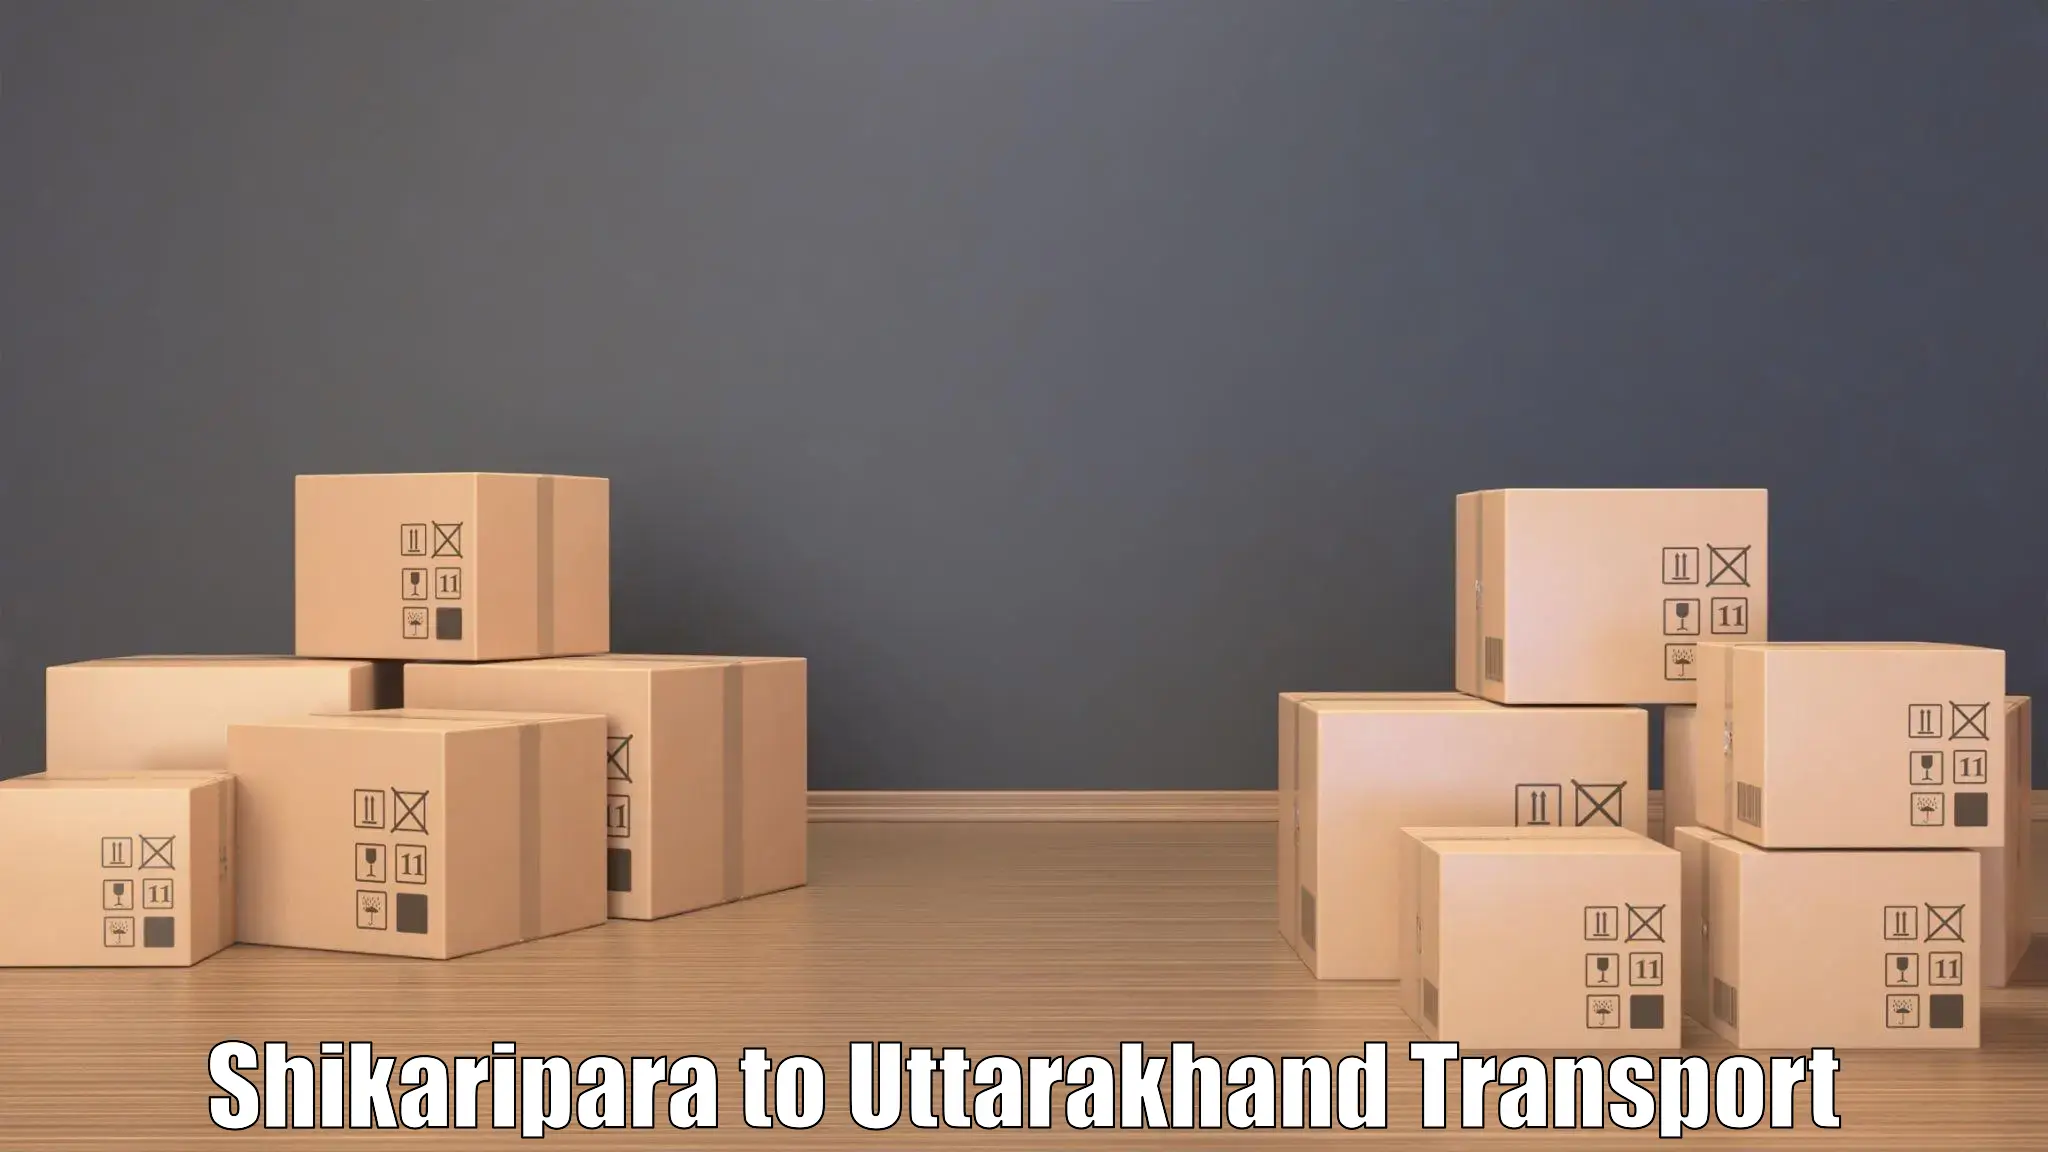 Daily transport service Shikaripara to Uttarakhand